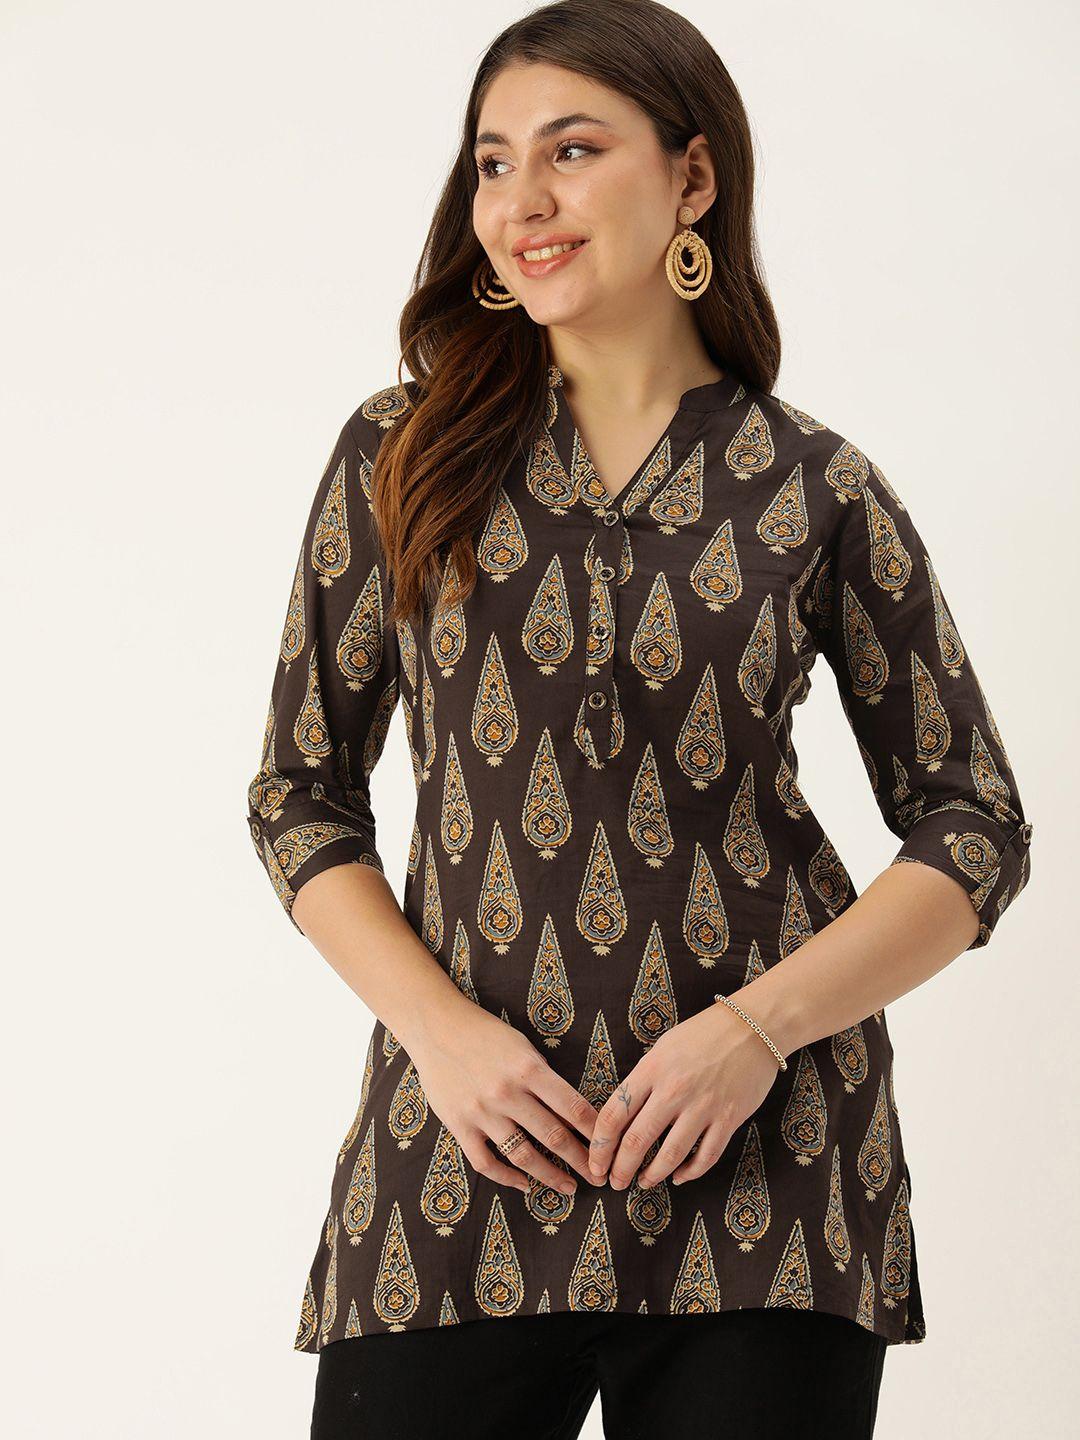 amukti-mandarin-collar-printed-ethnic-tunic